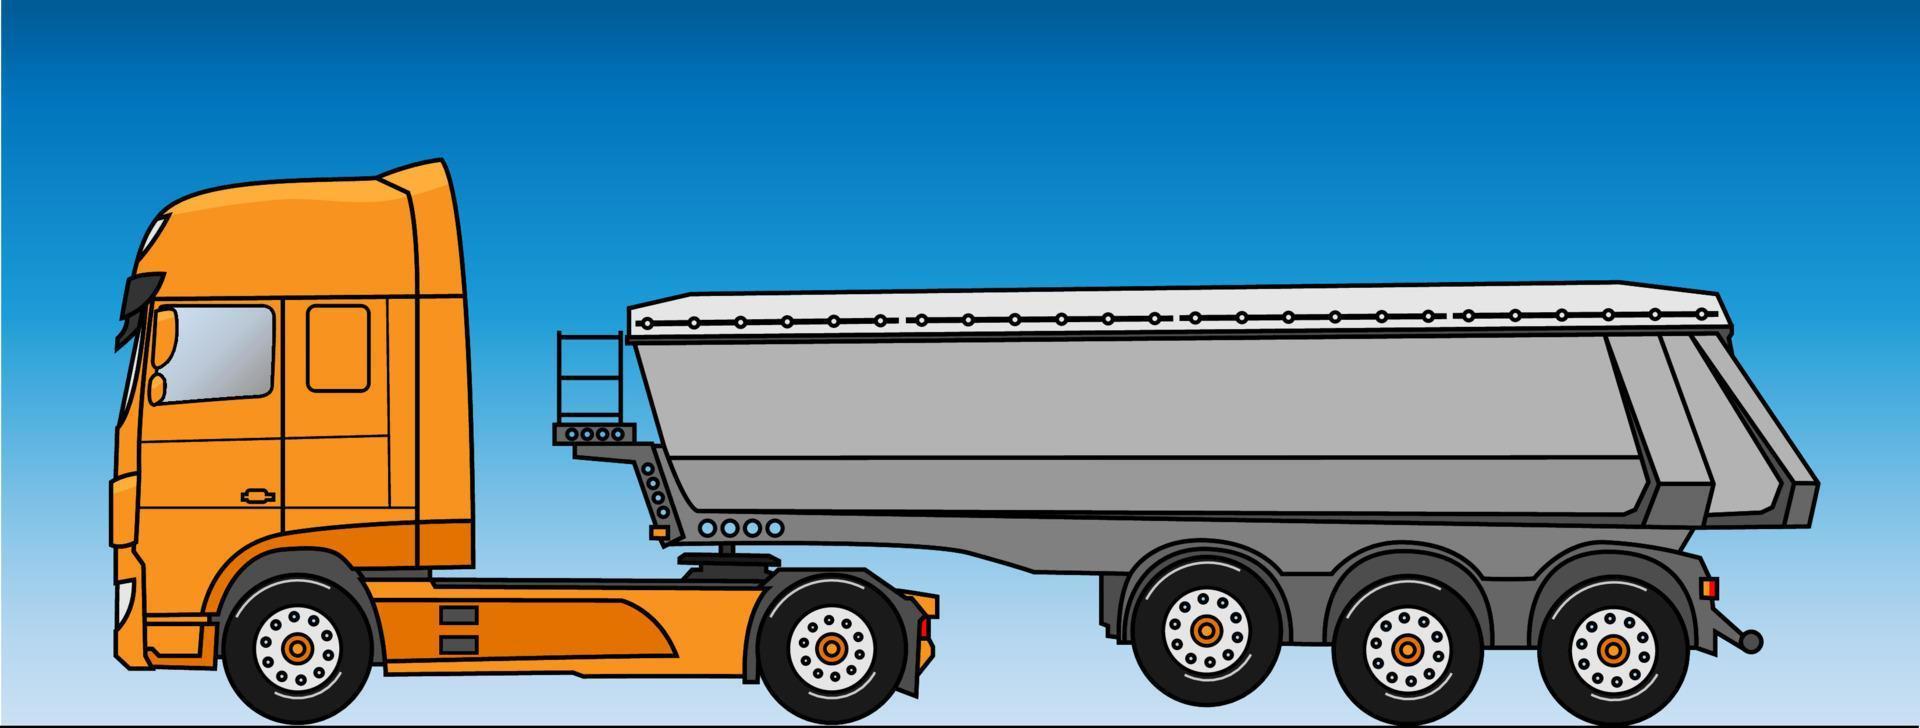 concetto di consegna di camion alla rinfusa. illustrazione vettoriale in stile piatto.